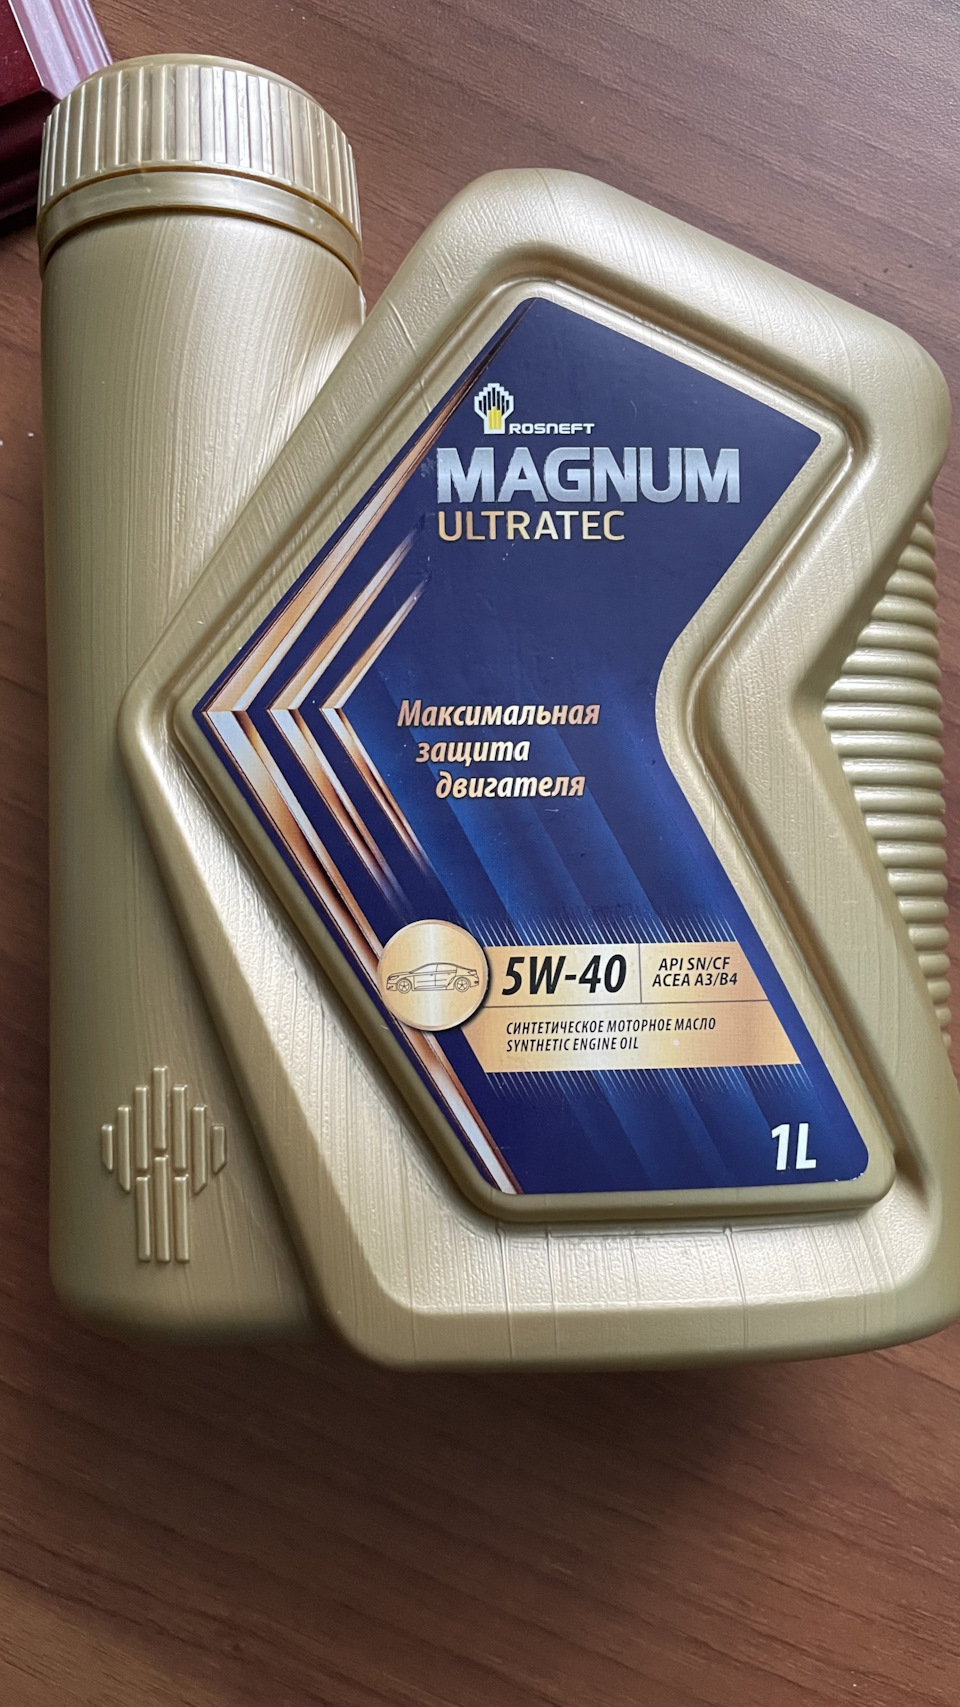 Магнум ультратек 5w40 купить. Rosneft Magnum Ultratec 5w40 реклама. Rosneft Magnum Ultratec. Упаковка моторного масла Magnum Ultratec. Справка от производитель моторного масла Magnum Ultratec.